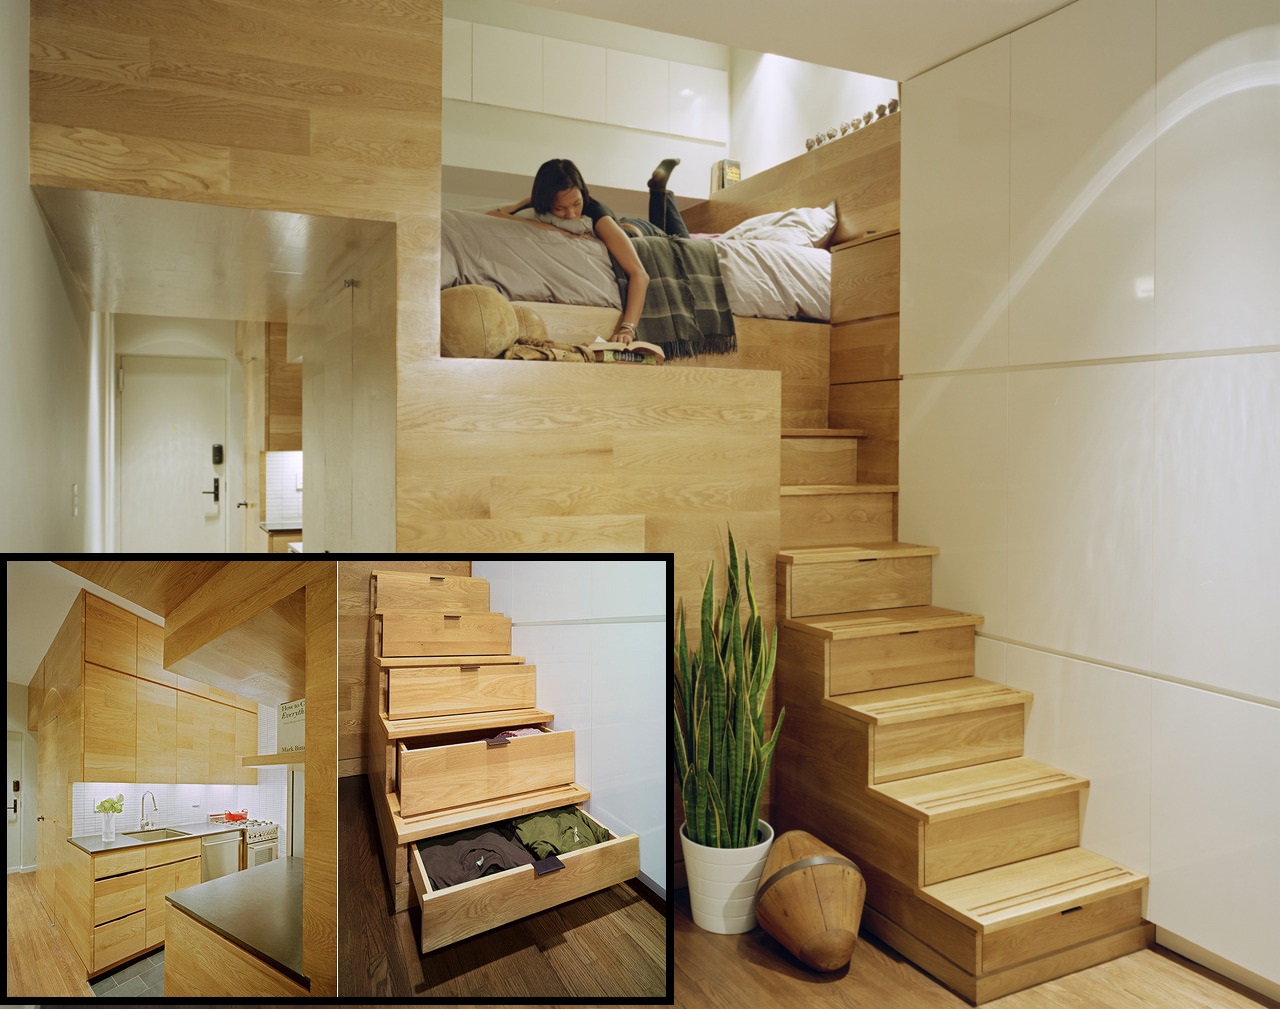 Apartment interior design.jpg